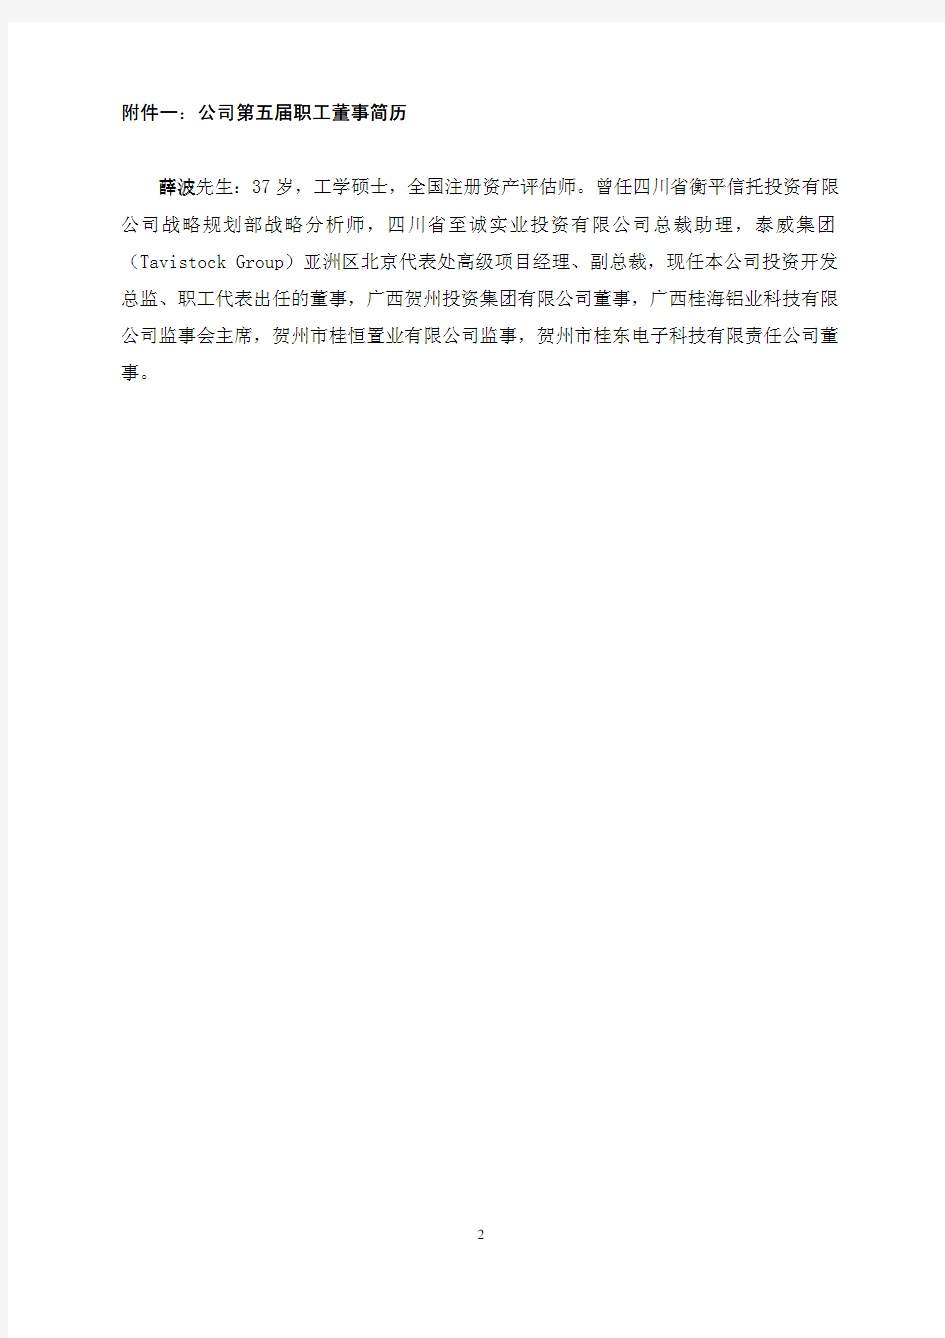 广西桂东电力股份有限公司 关于第五届职工董事及职工监事选举结果